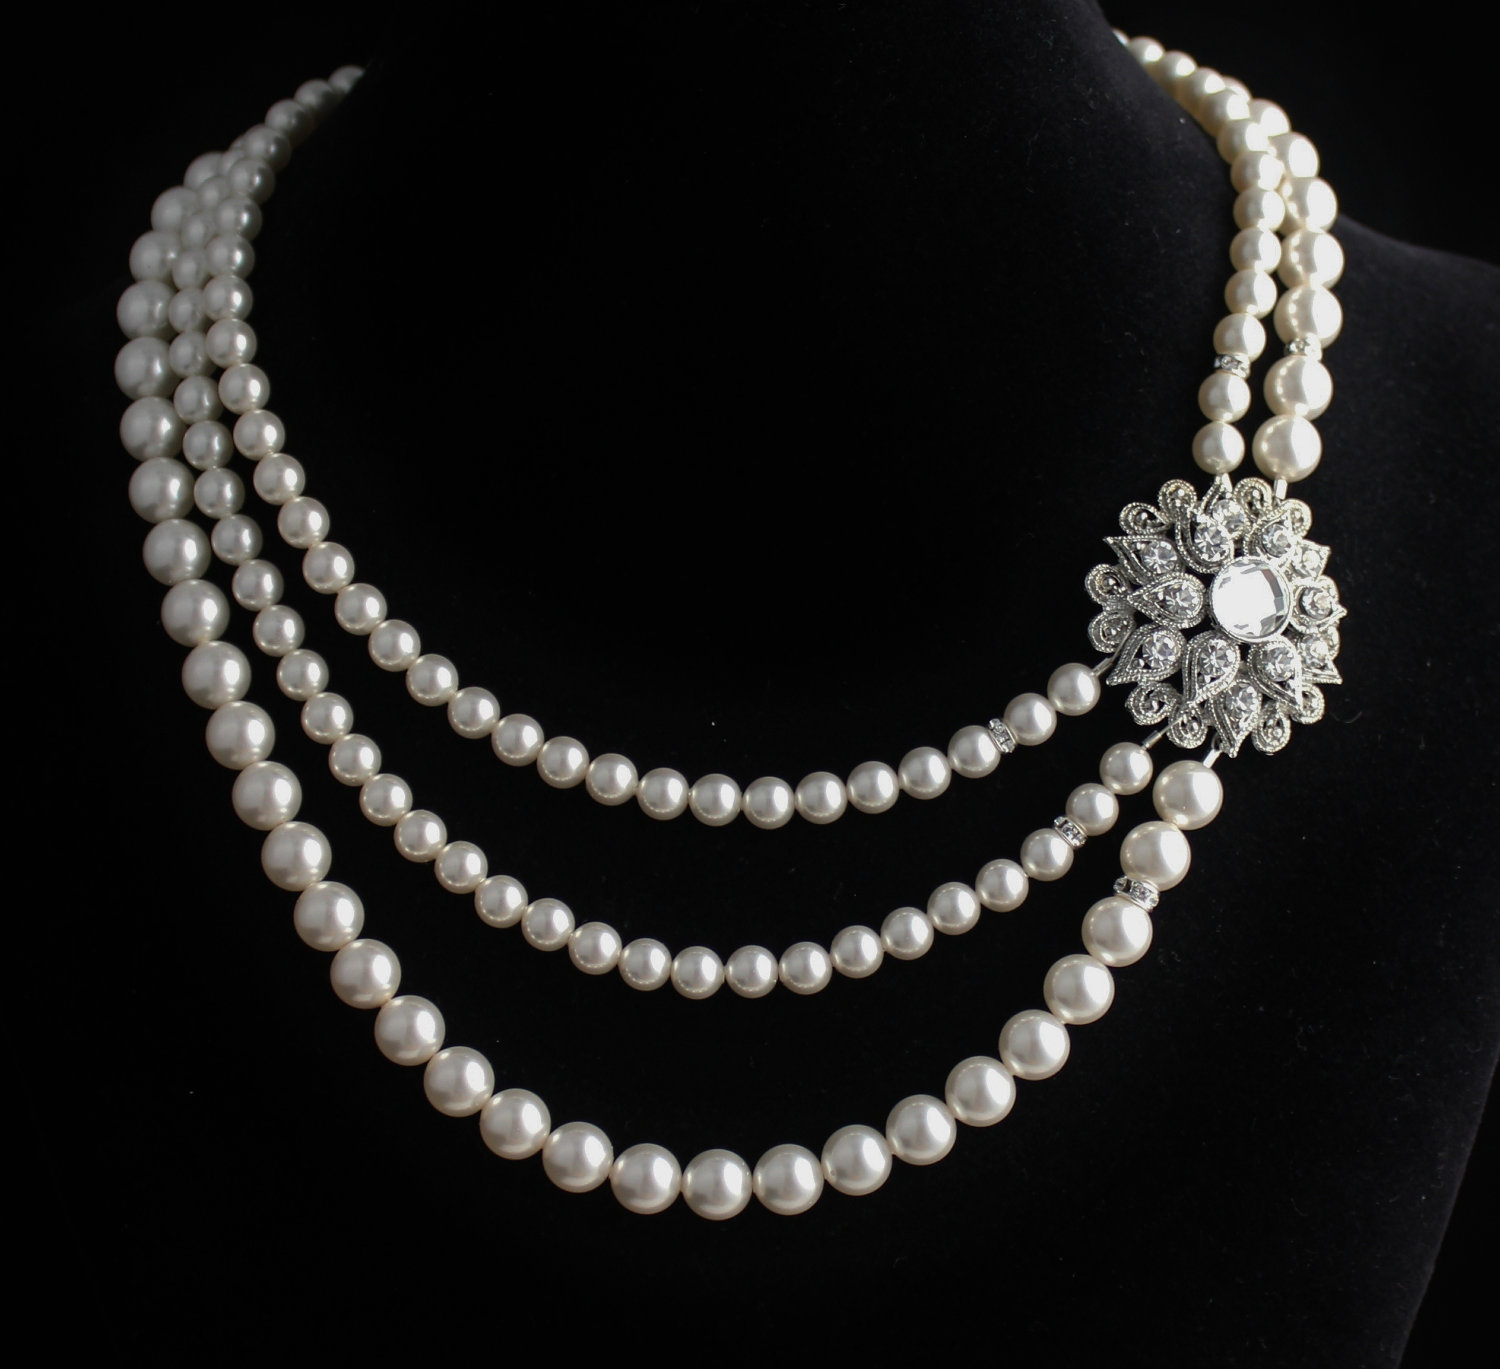 Unique Pearl Necklace Designs Jewelry World